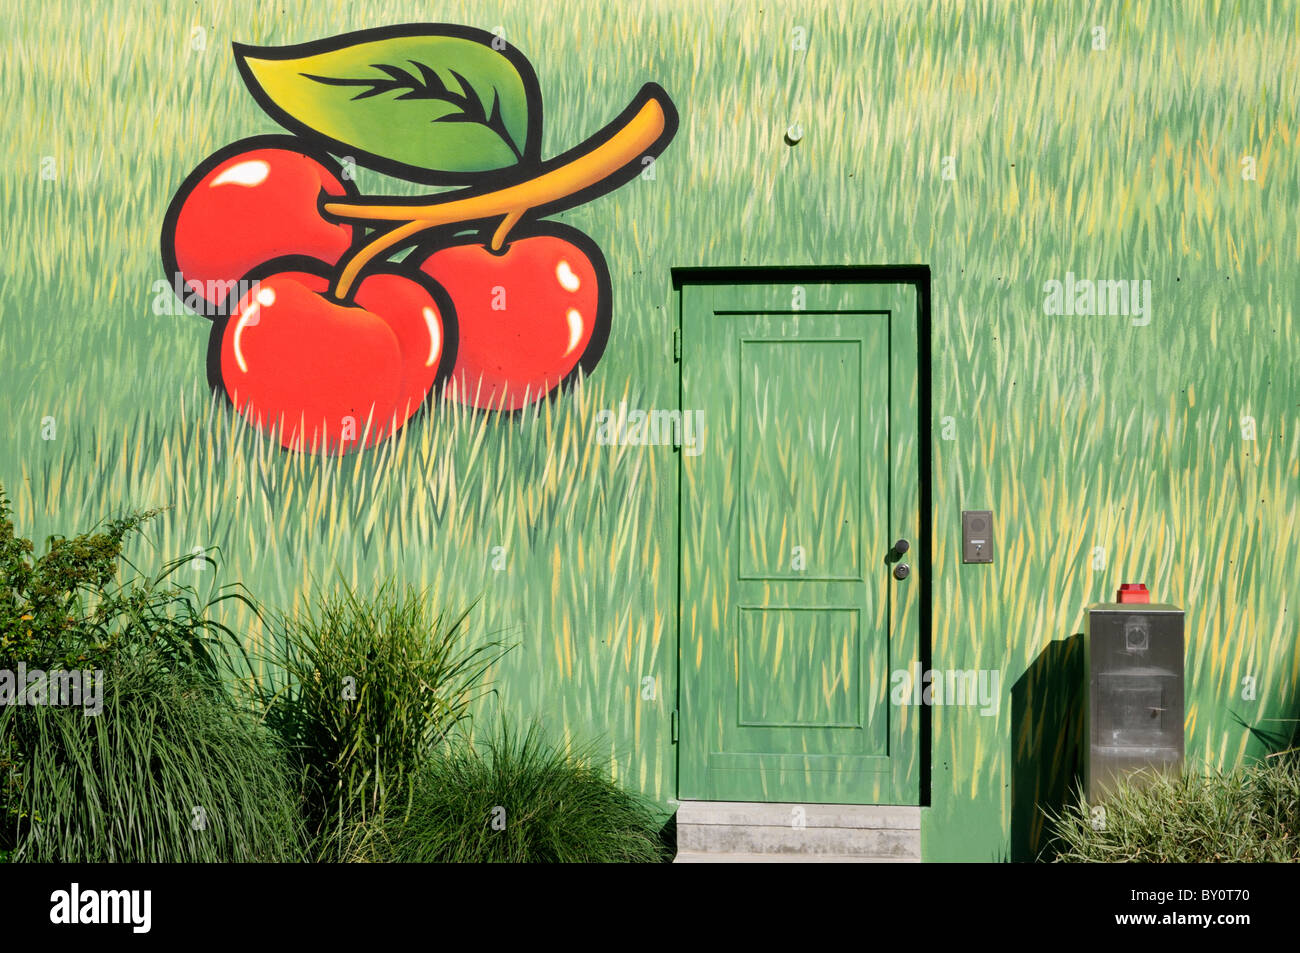 Wandmalerei an Einer Hauswand; Motiv-Kirschen Und Gras. -Wandmalerei an eine Hauswand; Motive-Kirschen und Rasen. Stockfoto